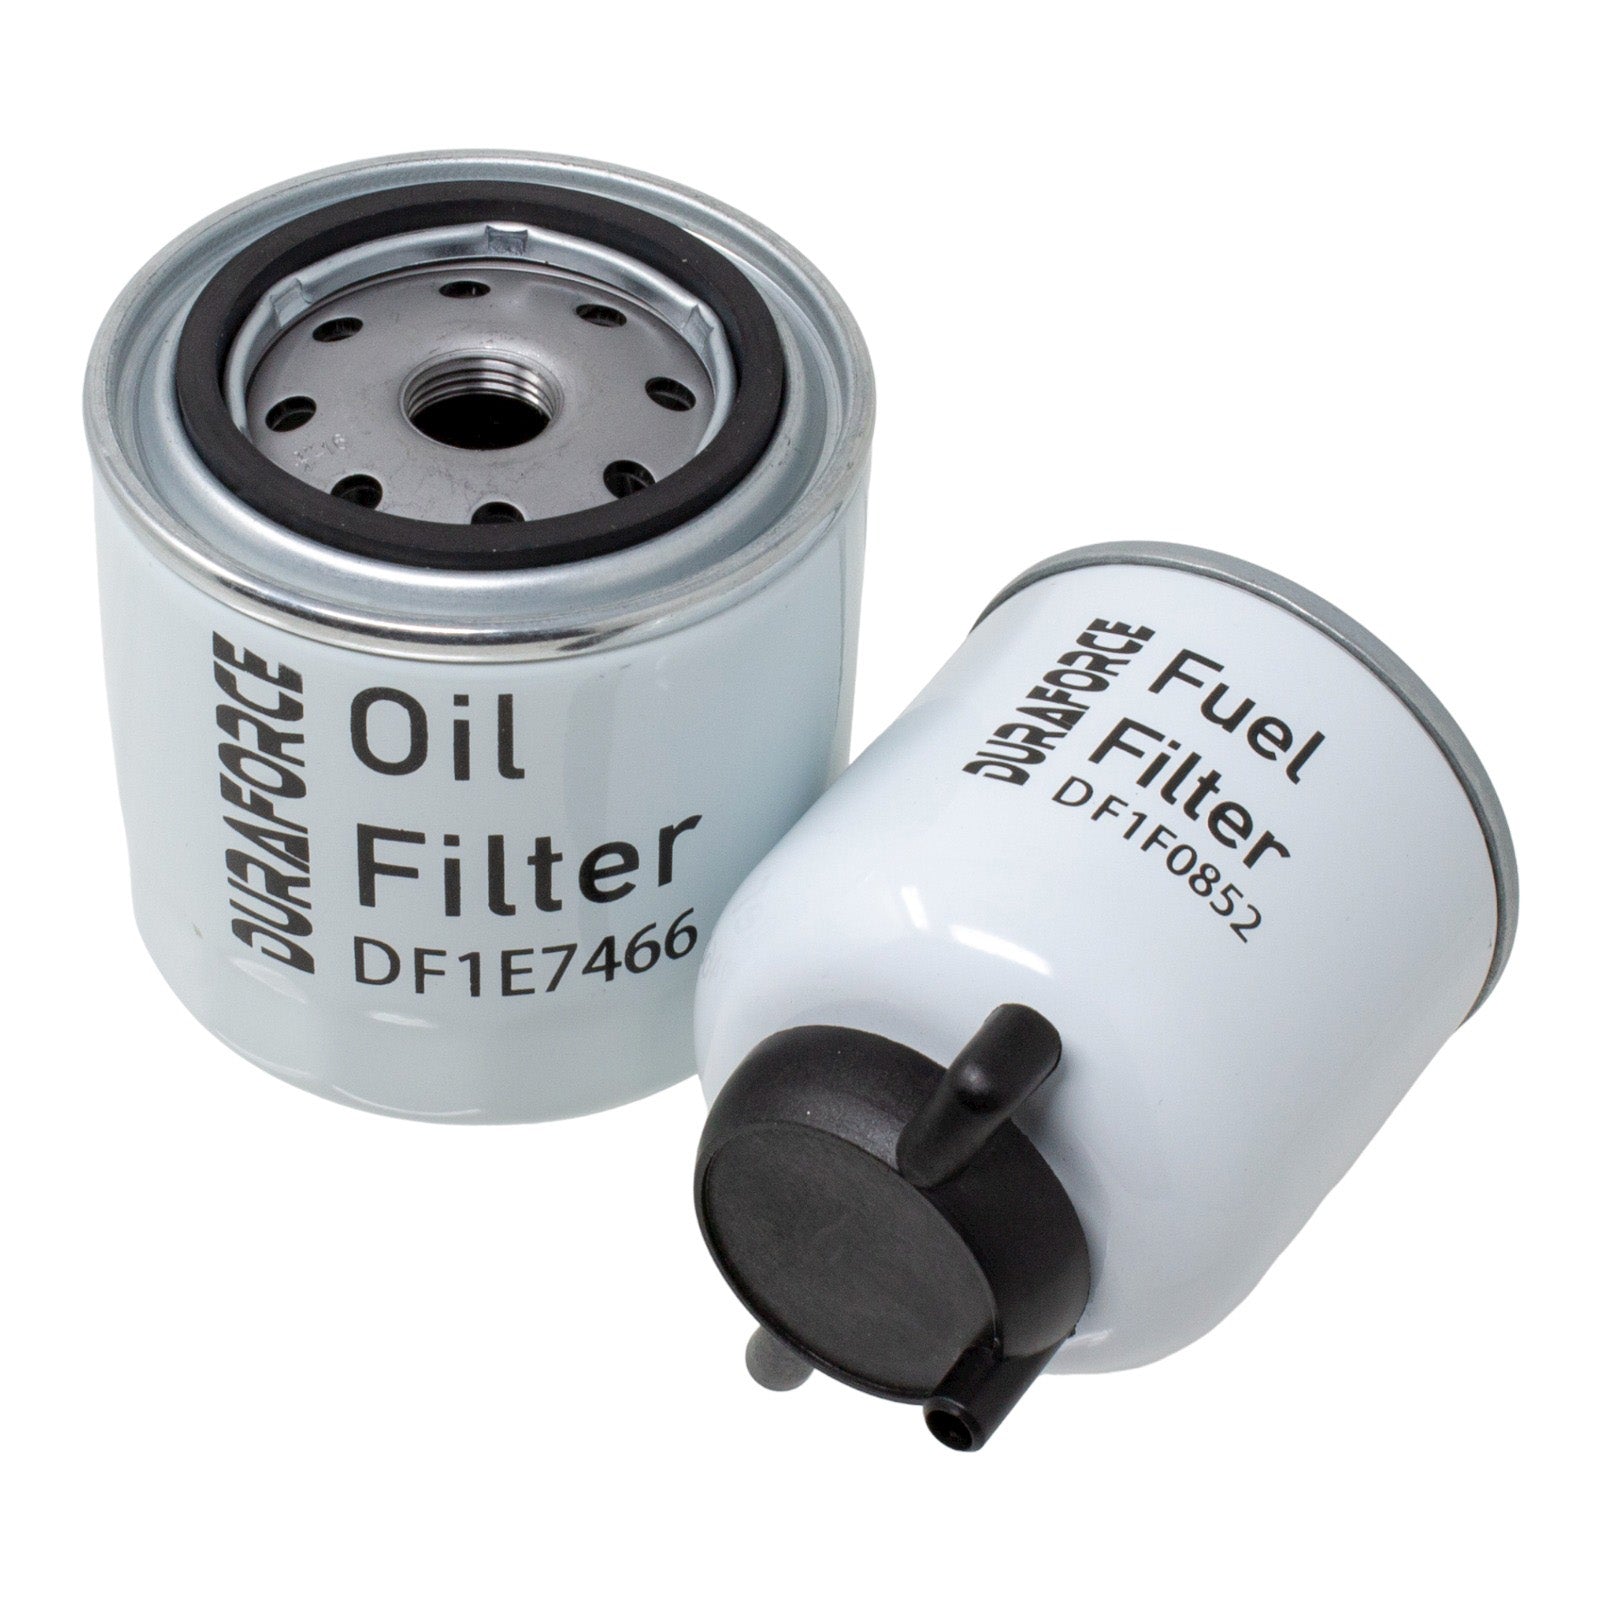 Duraforce 6675517 6667352, Engine Oil & Fuel Filter Kit For Bobcat